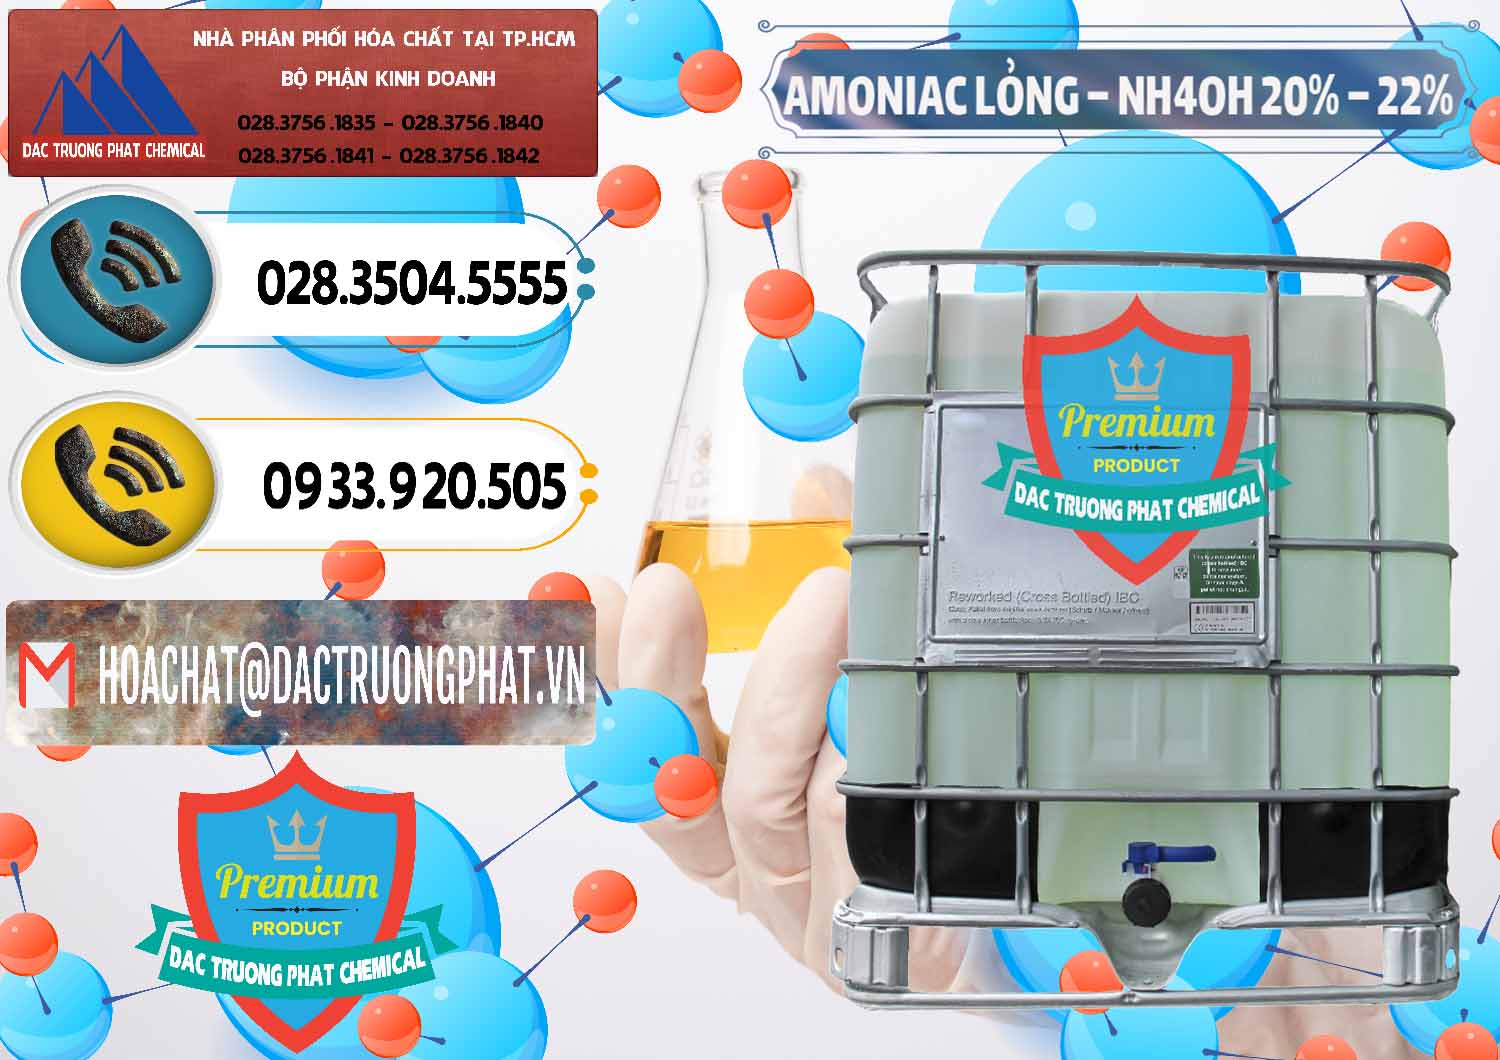 Công ty kinh doanh & bán Amoniac Lỏng – NH4OH 20% – 22% Việt Nam - 0185 - Chuyên bán và cung cấp hóa chất tại TP.HCM - hoachatdetnhuom.vn